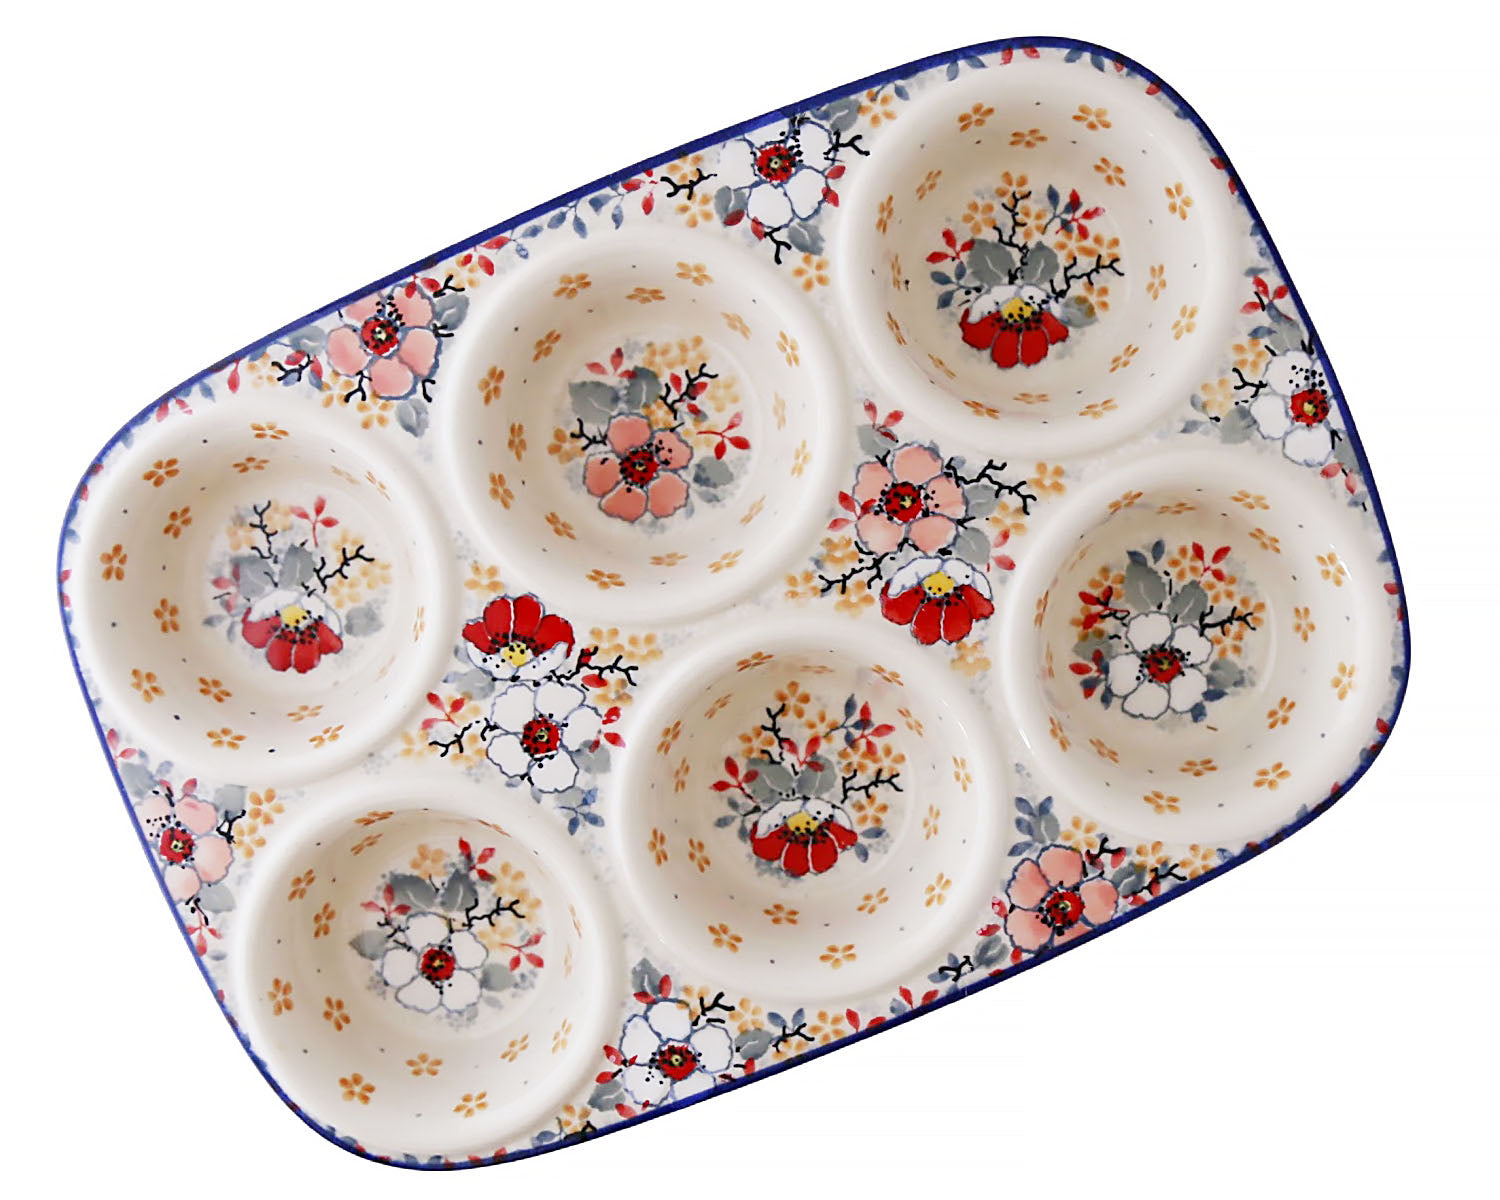 Unikat Muffin Pan – Pacific Polish Pottery